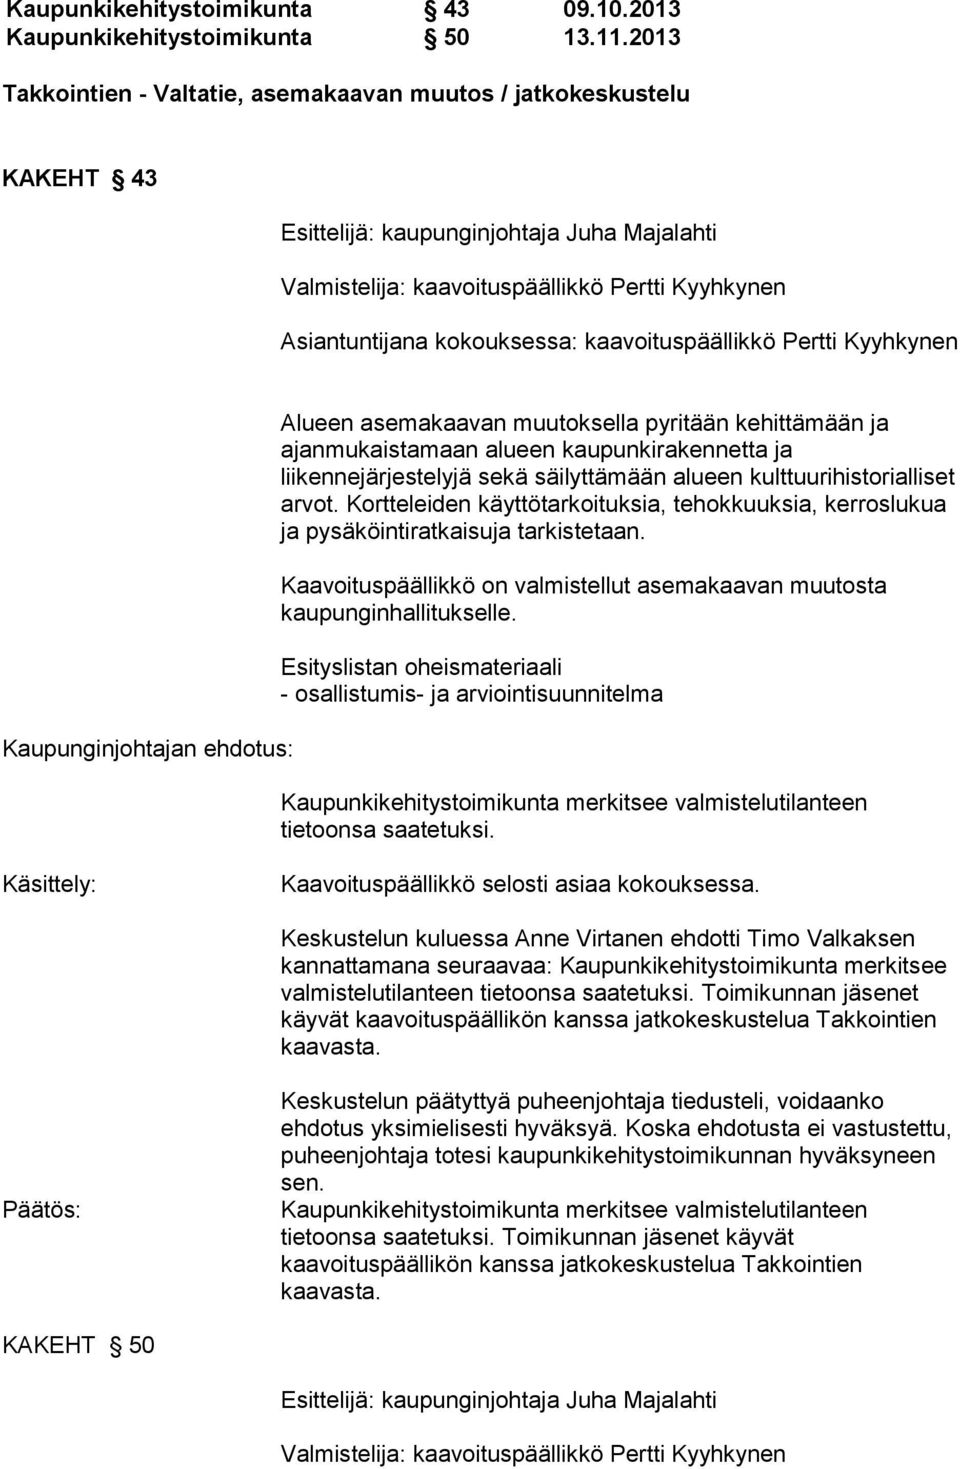 kaavoituspäällikkö Pertti Kyyhkynen Kaupunginjohtajan ehdotus: Alueen asemakaavan muutoksella pyritään kehittämään ja ajanmukaistamaan alueen kaupunkirakennetta ja liikennejärjestelyjä sekä